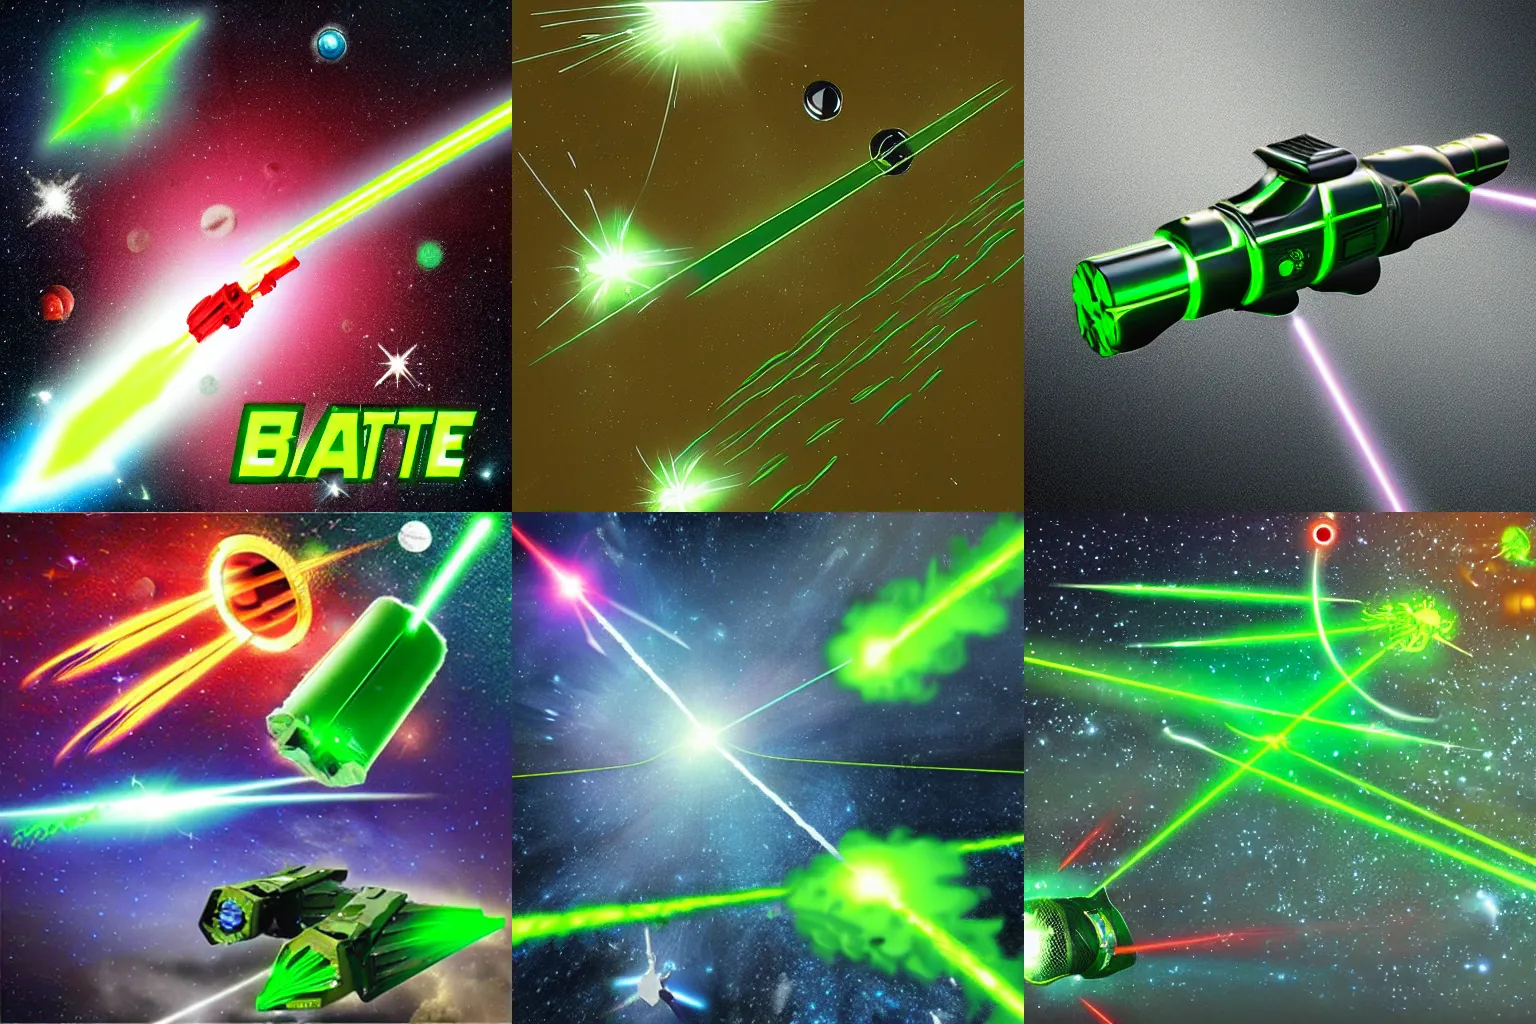 Prompt: space battle, huge green laser